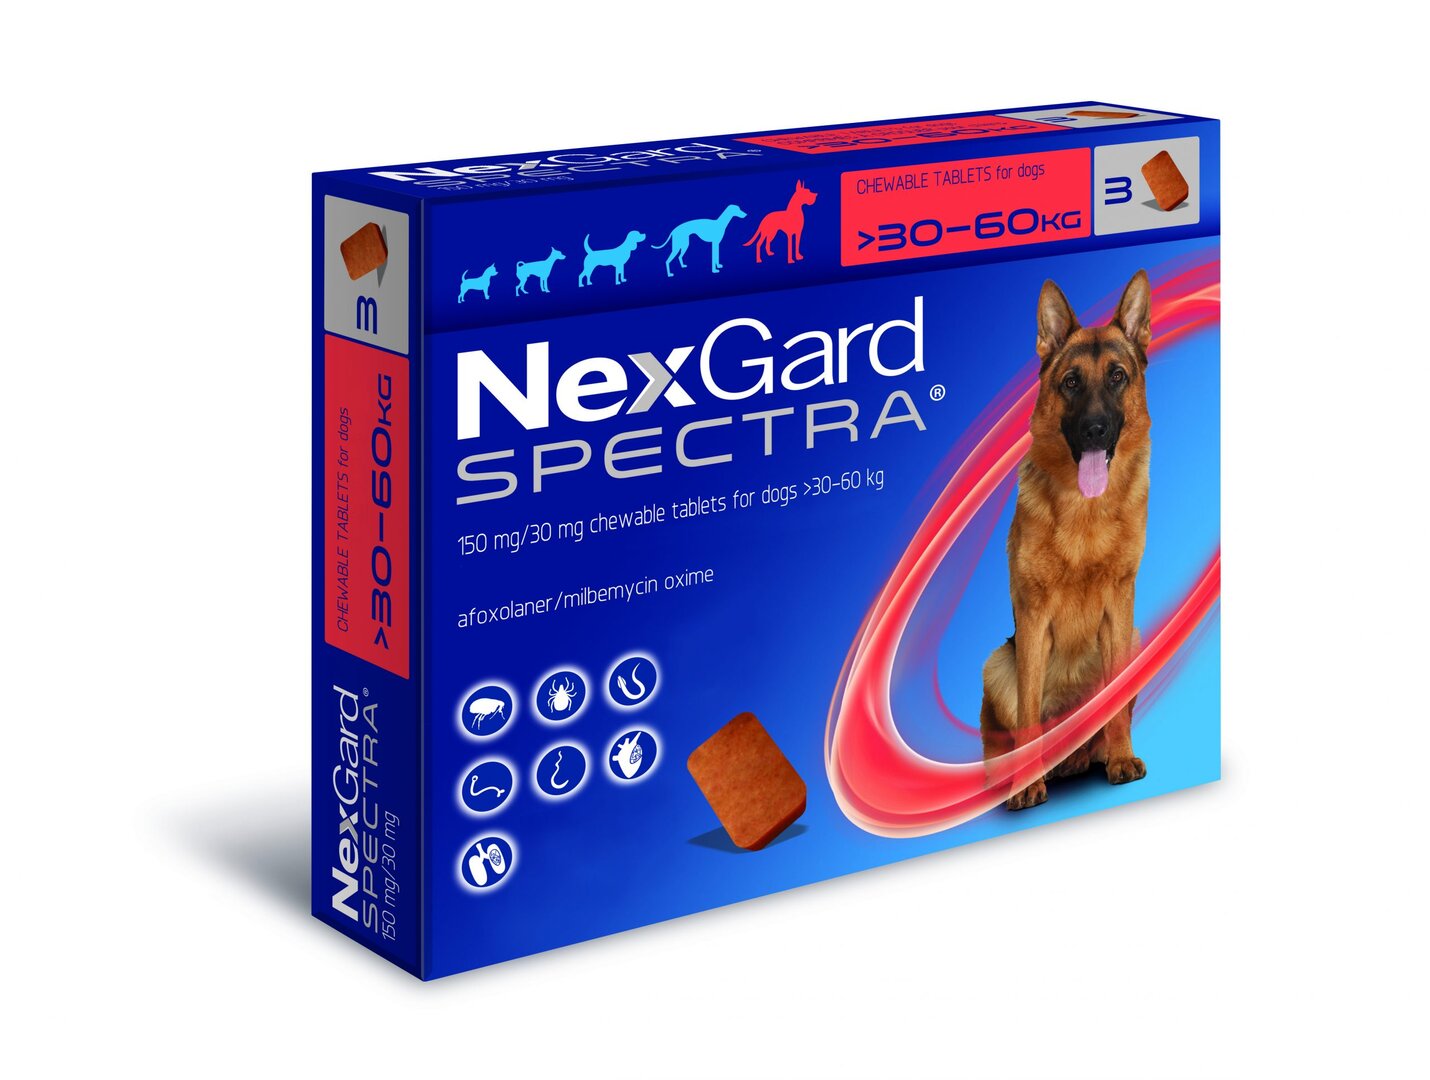 Nexgard Spectra-ნექსგარდი ანტიპარაზიტული პრეპარატი 30-60